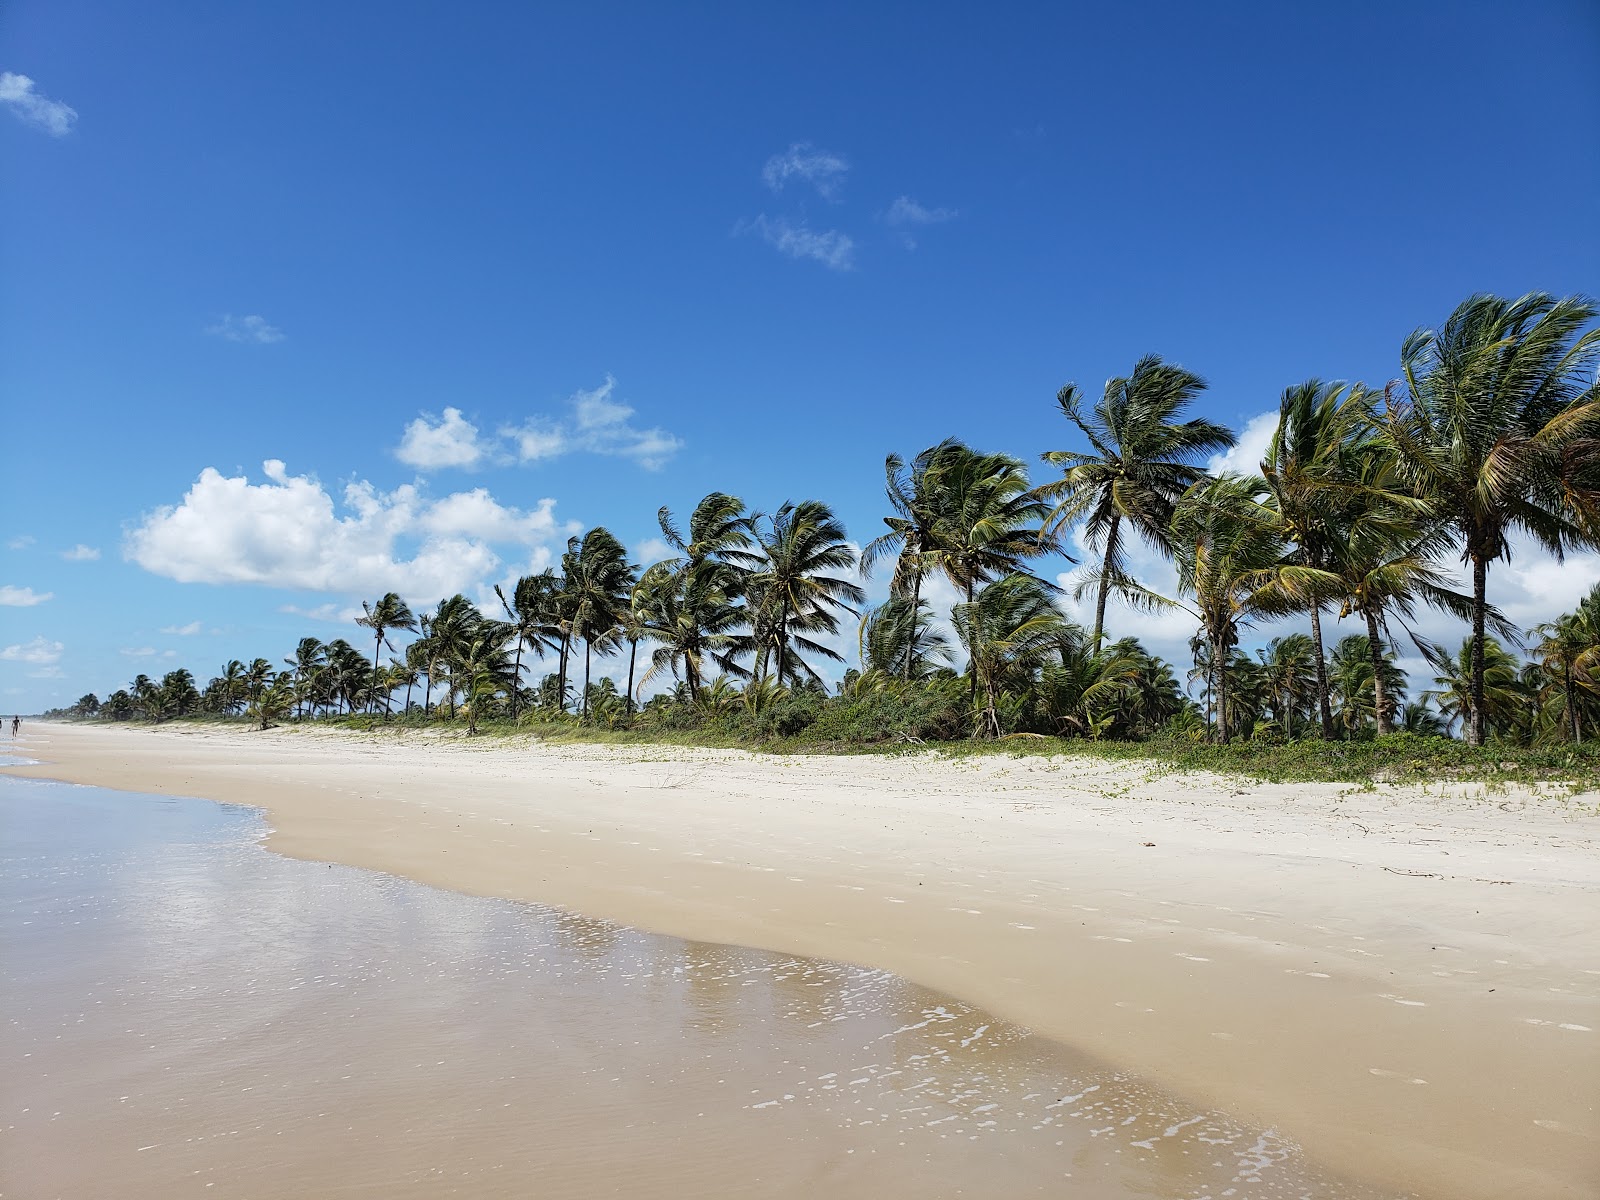 Praia da ilha de Comandatuba的照片 - 受到放松专家欢迎的热门地点